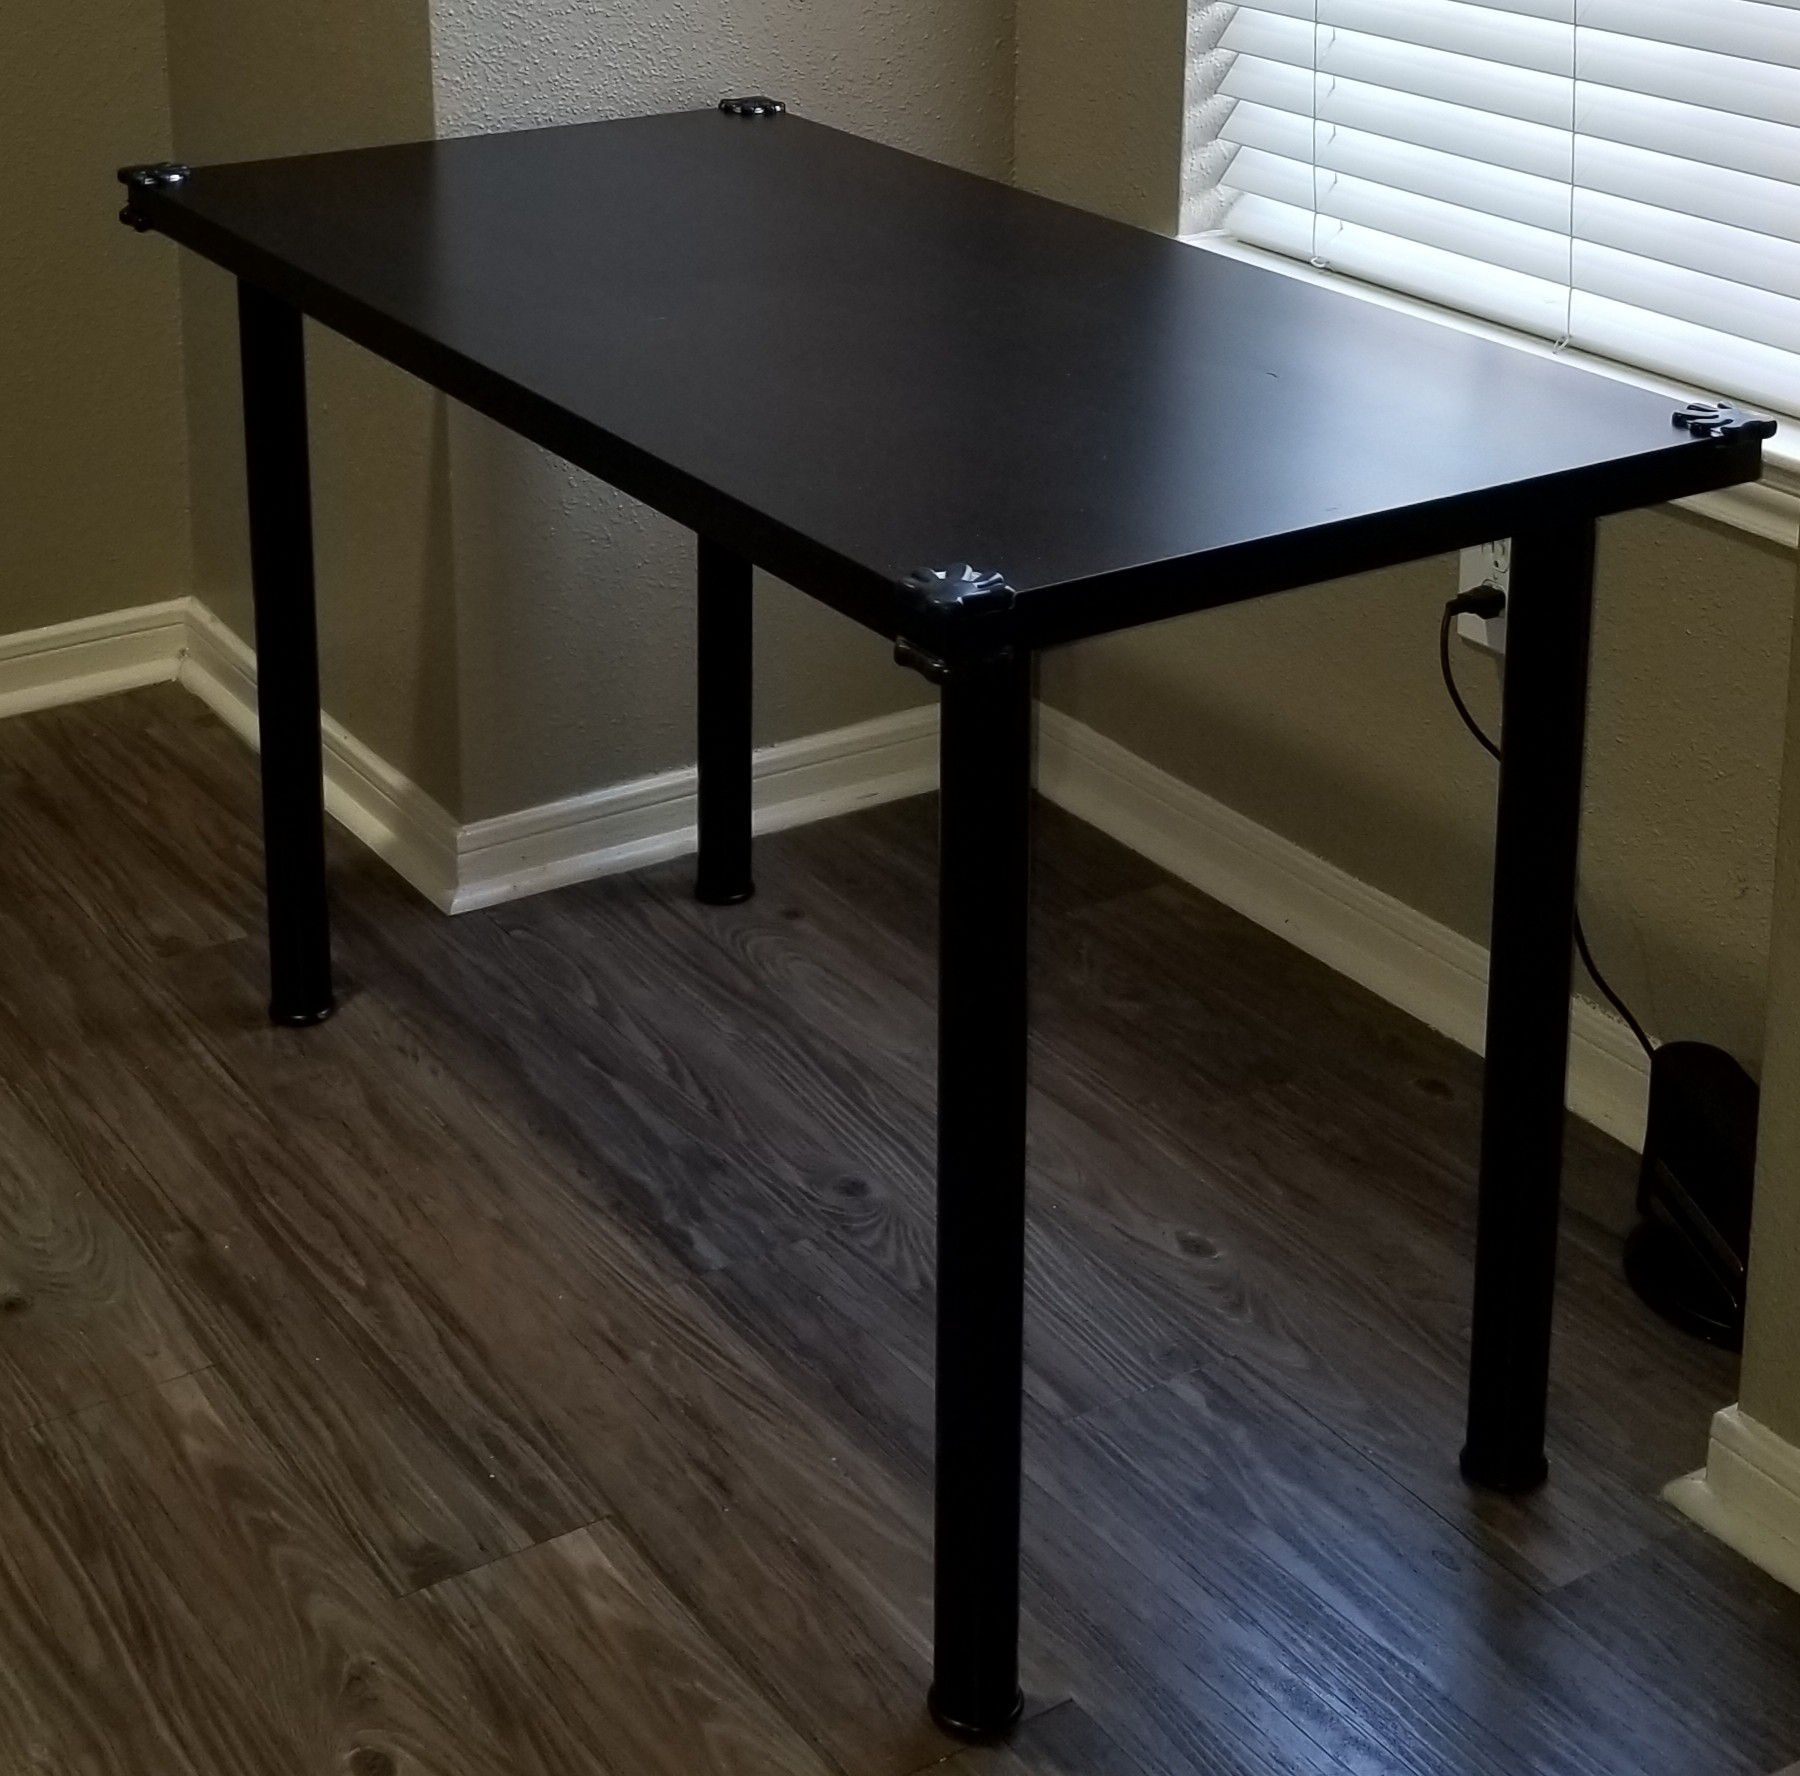 Table IKEA, black-brown, 47 1/4x23 5/8 "